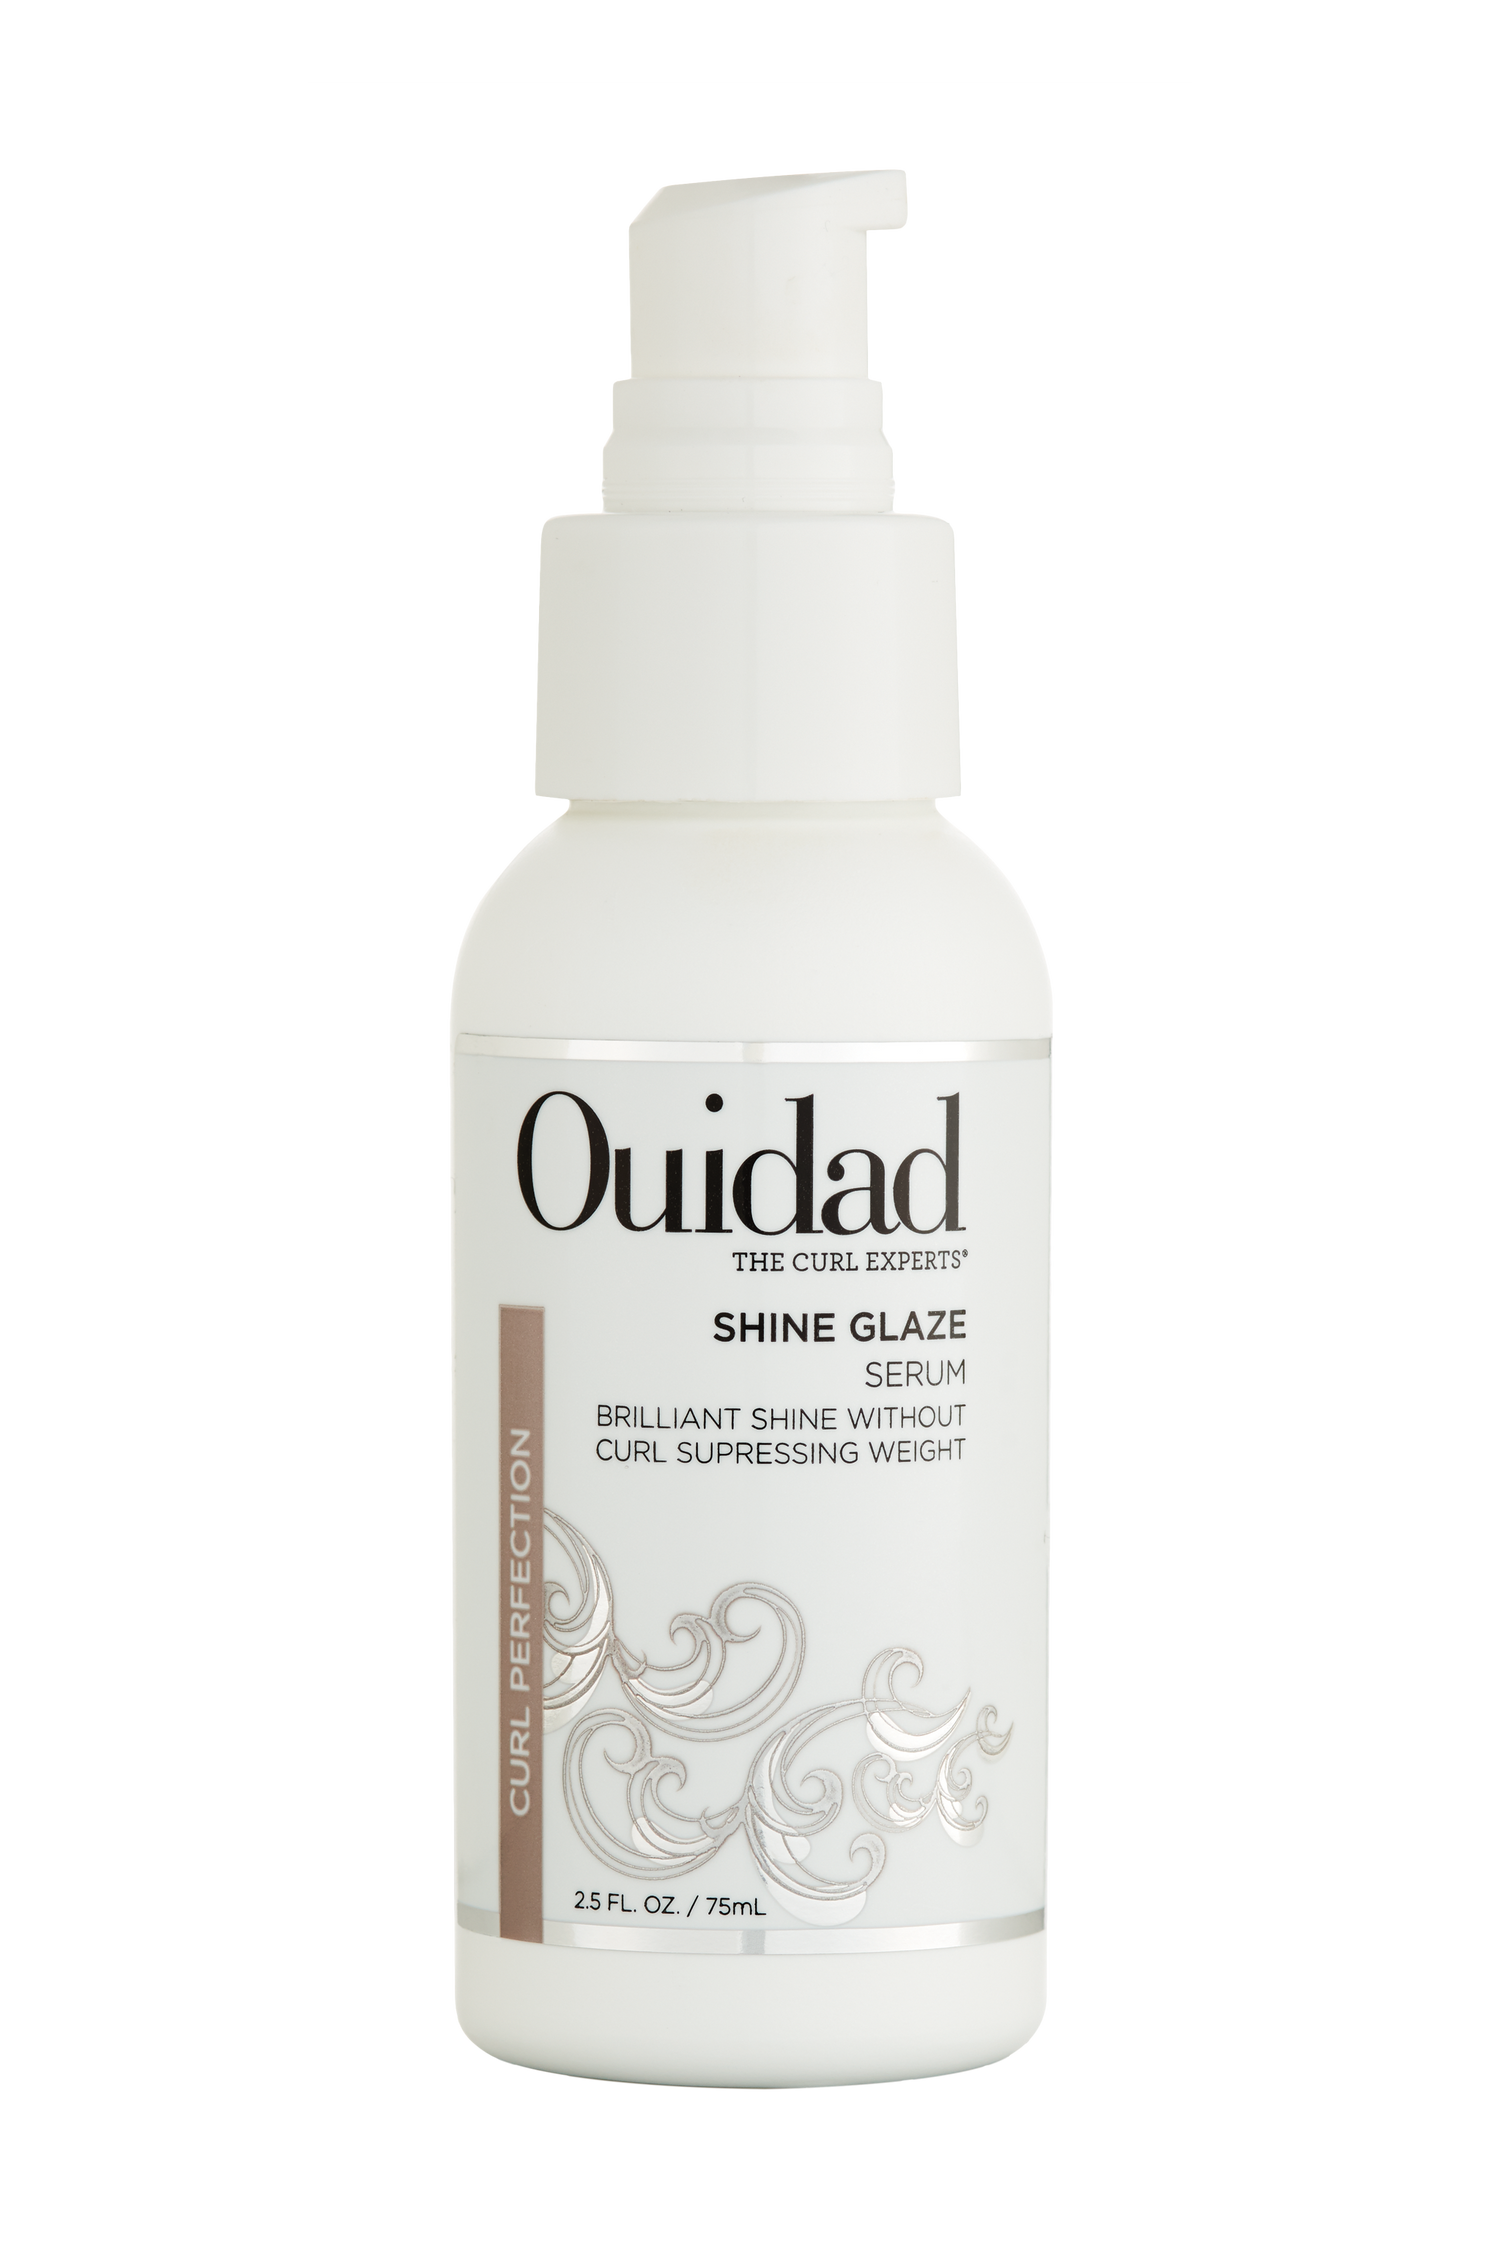 OUIDAD Shine Glaze Serum, 2.5 Fl oz